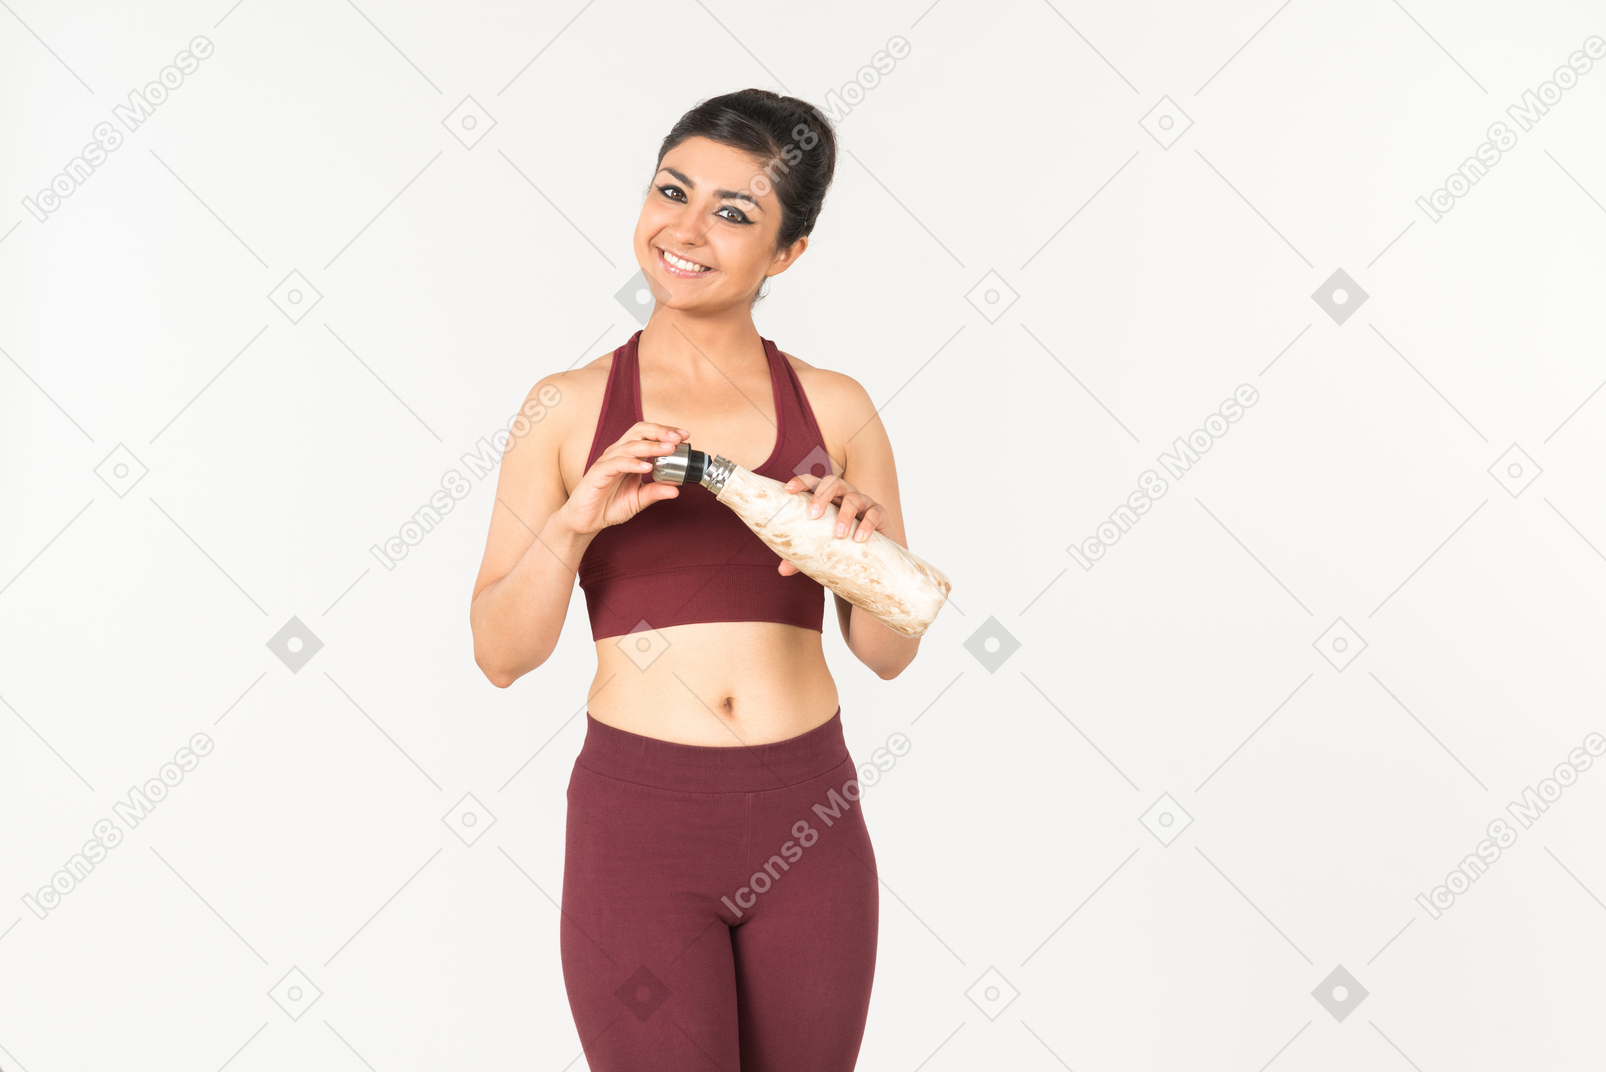 Jovem mulher indiana no sportswear segurando o frasco do esporte